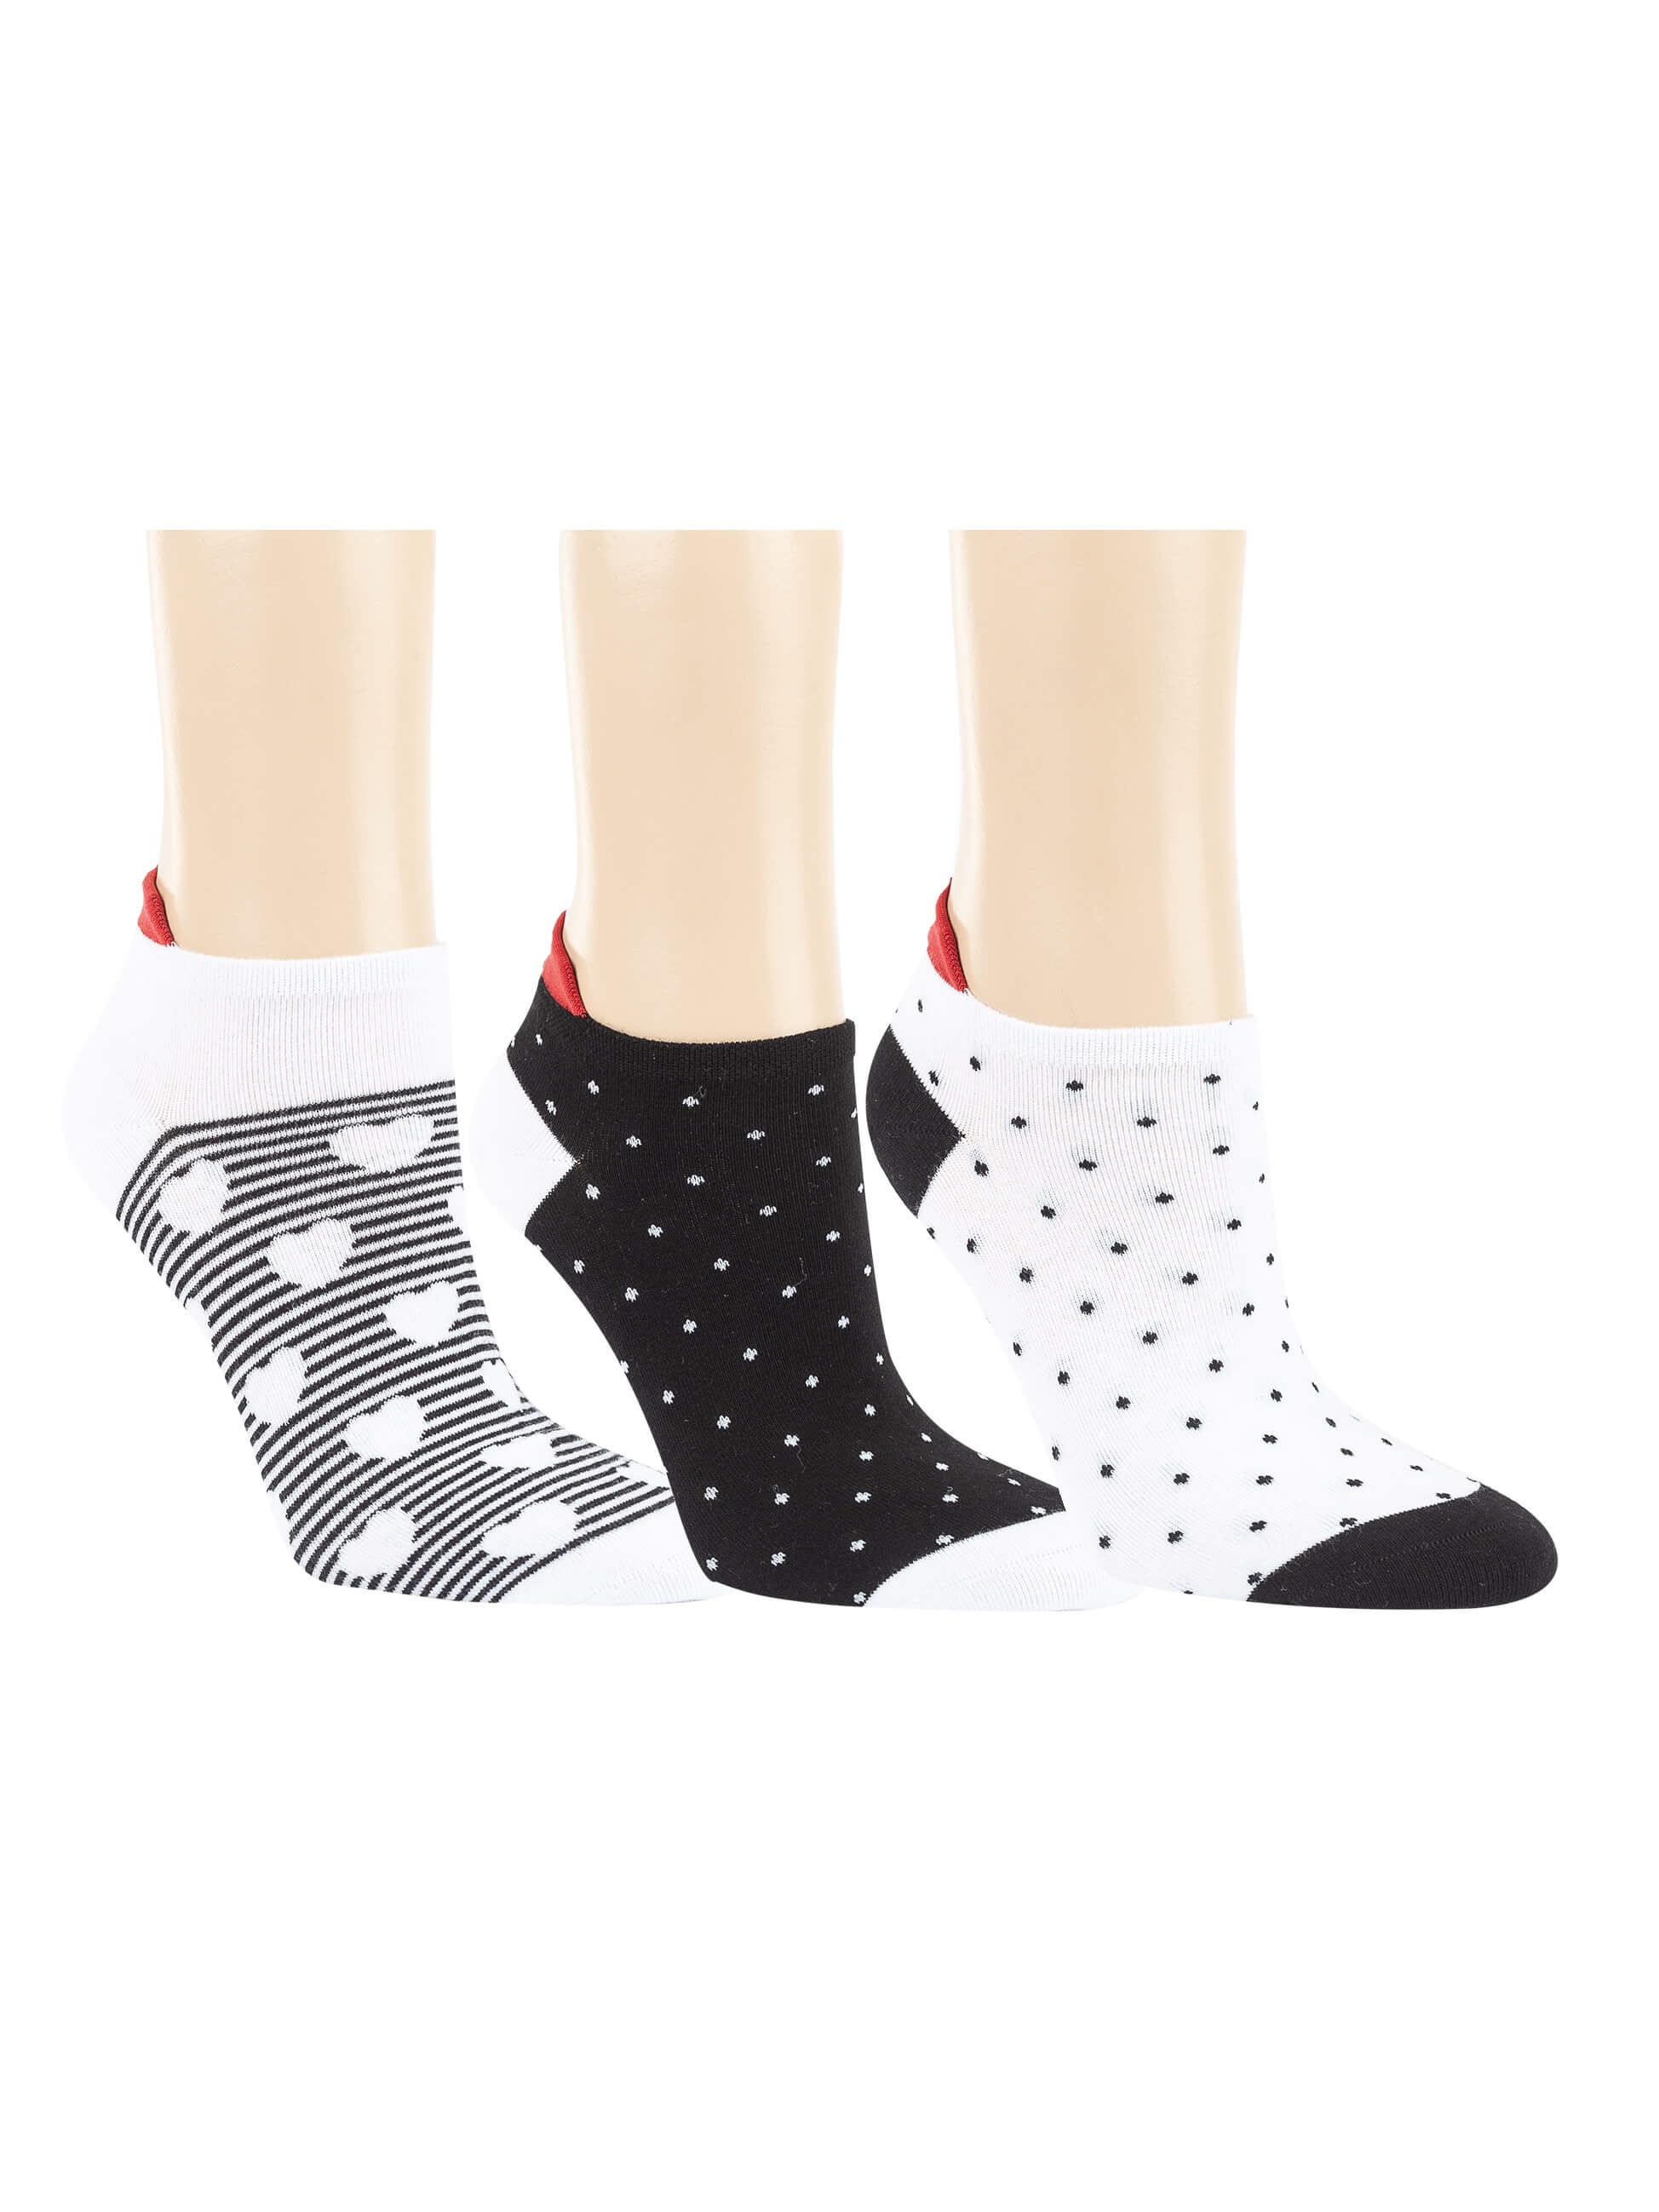 6,10 Damen - Socken Sneaker - - Black&White EUR